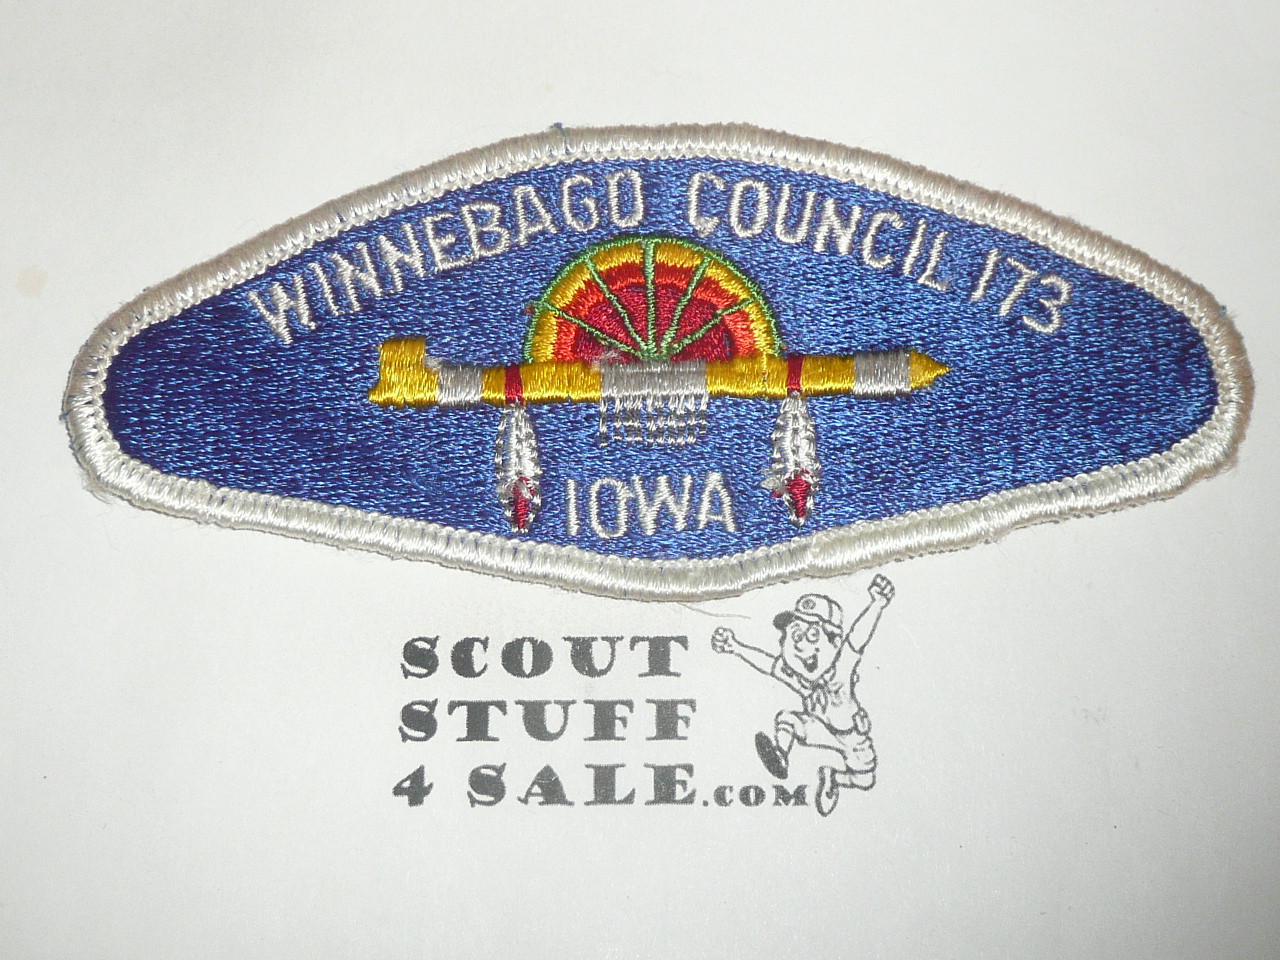 Winnebago Council s1 CSP - Scout